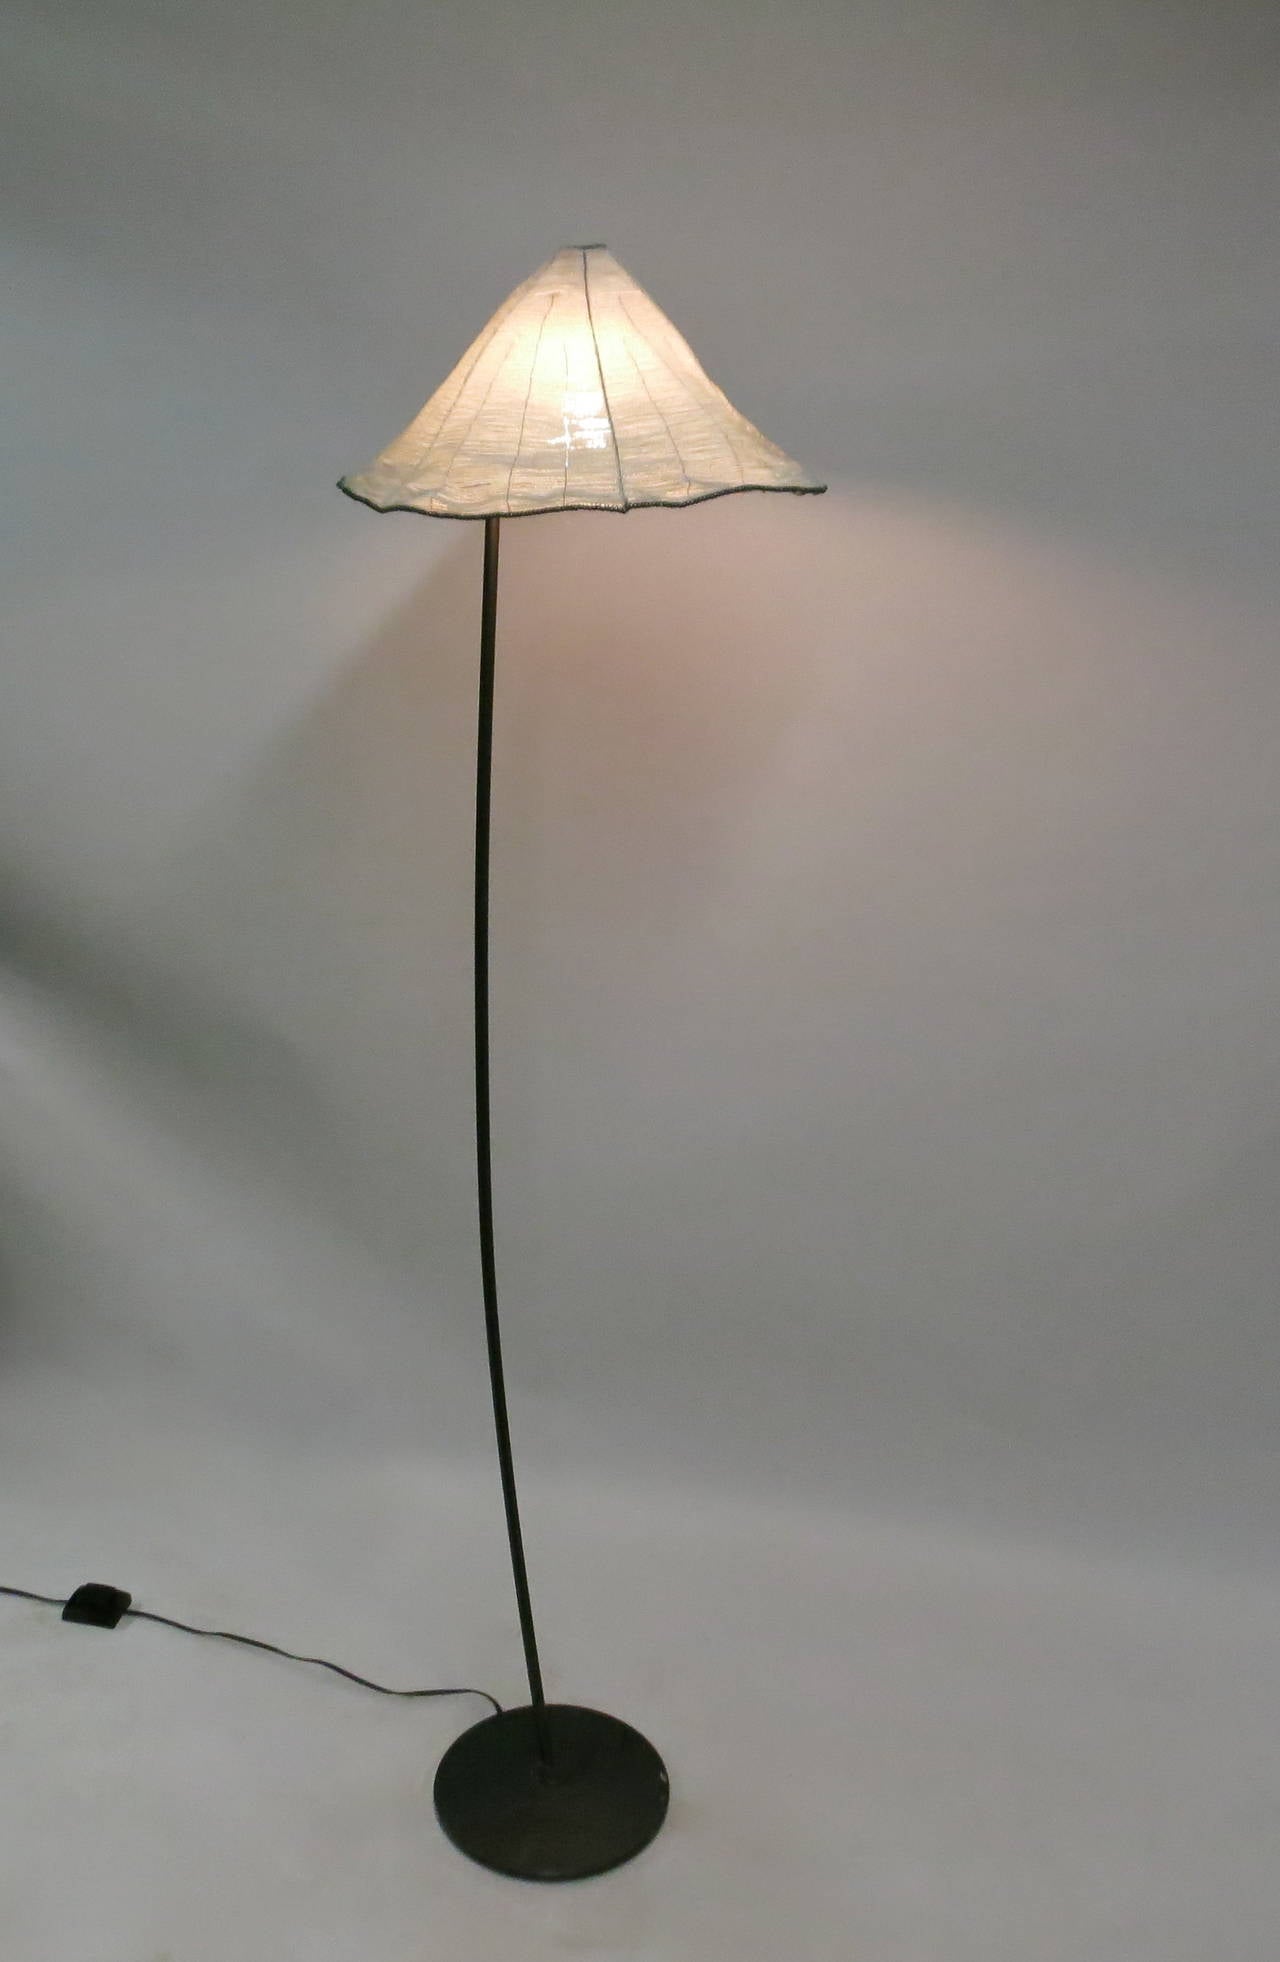 tossarus lamp